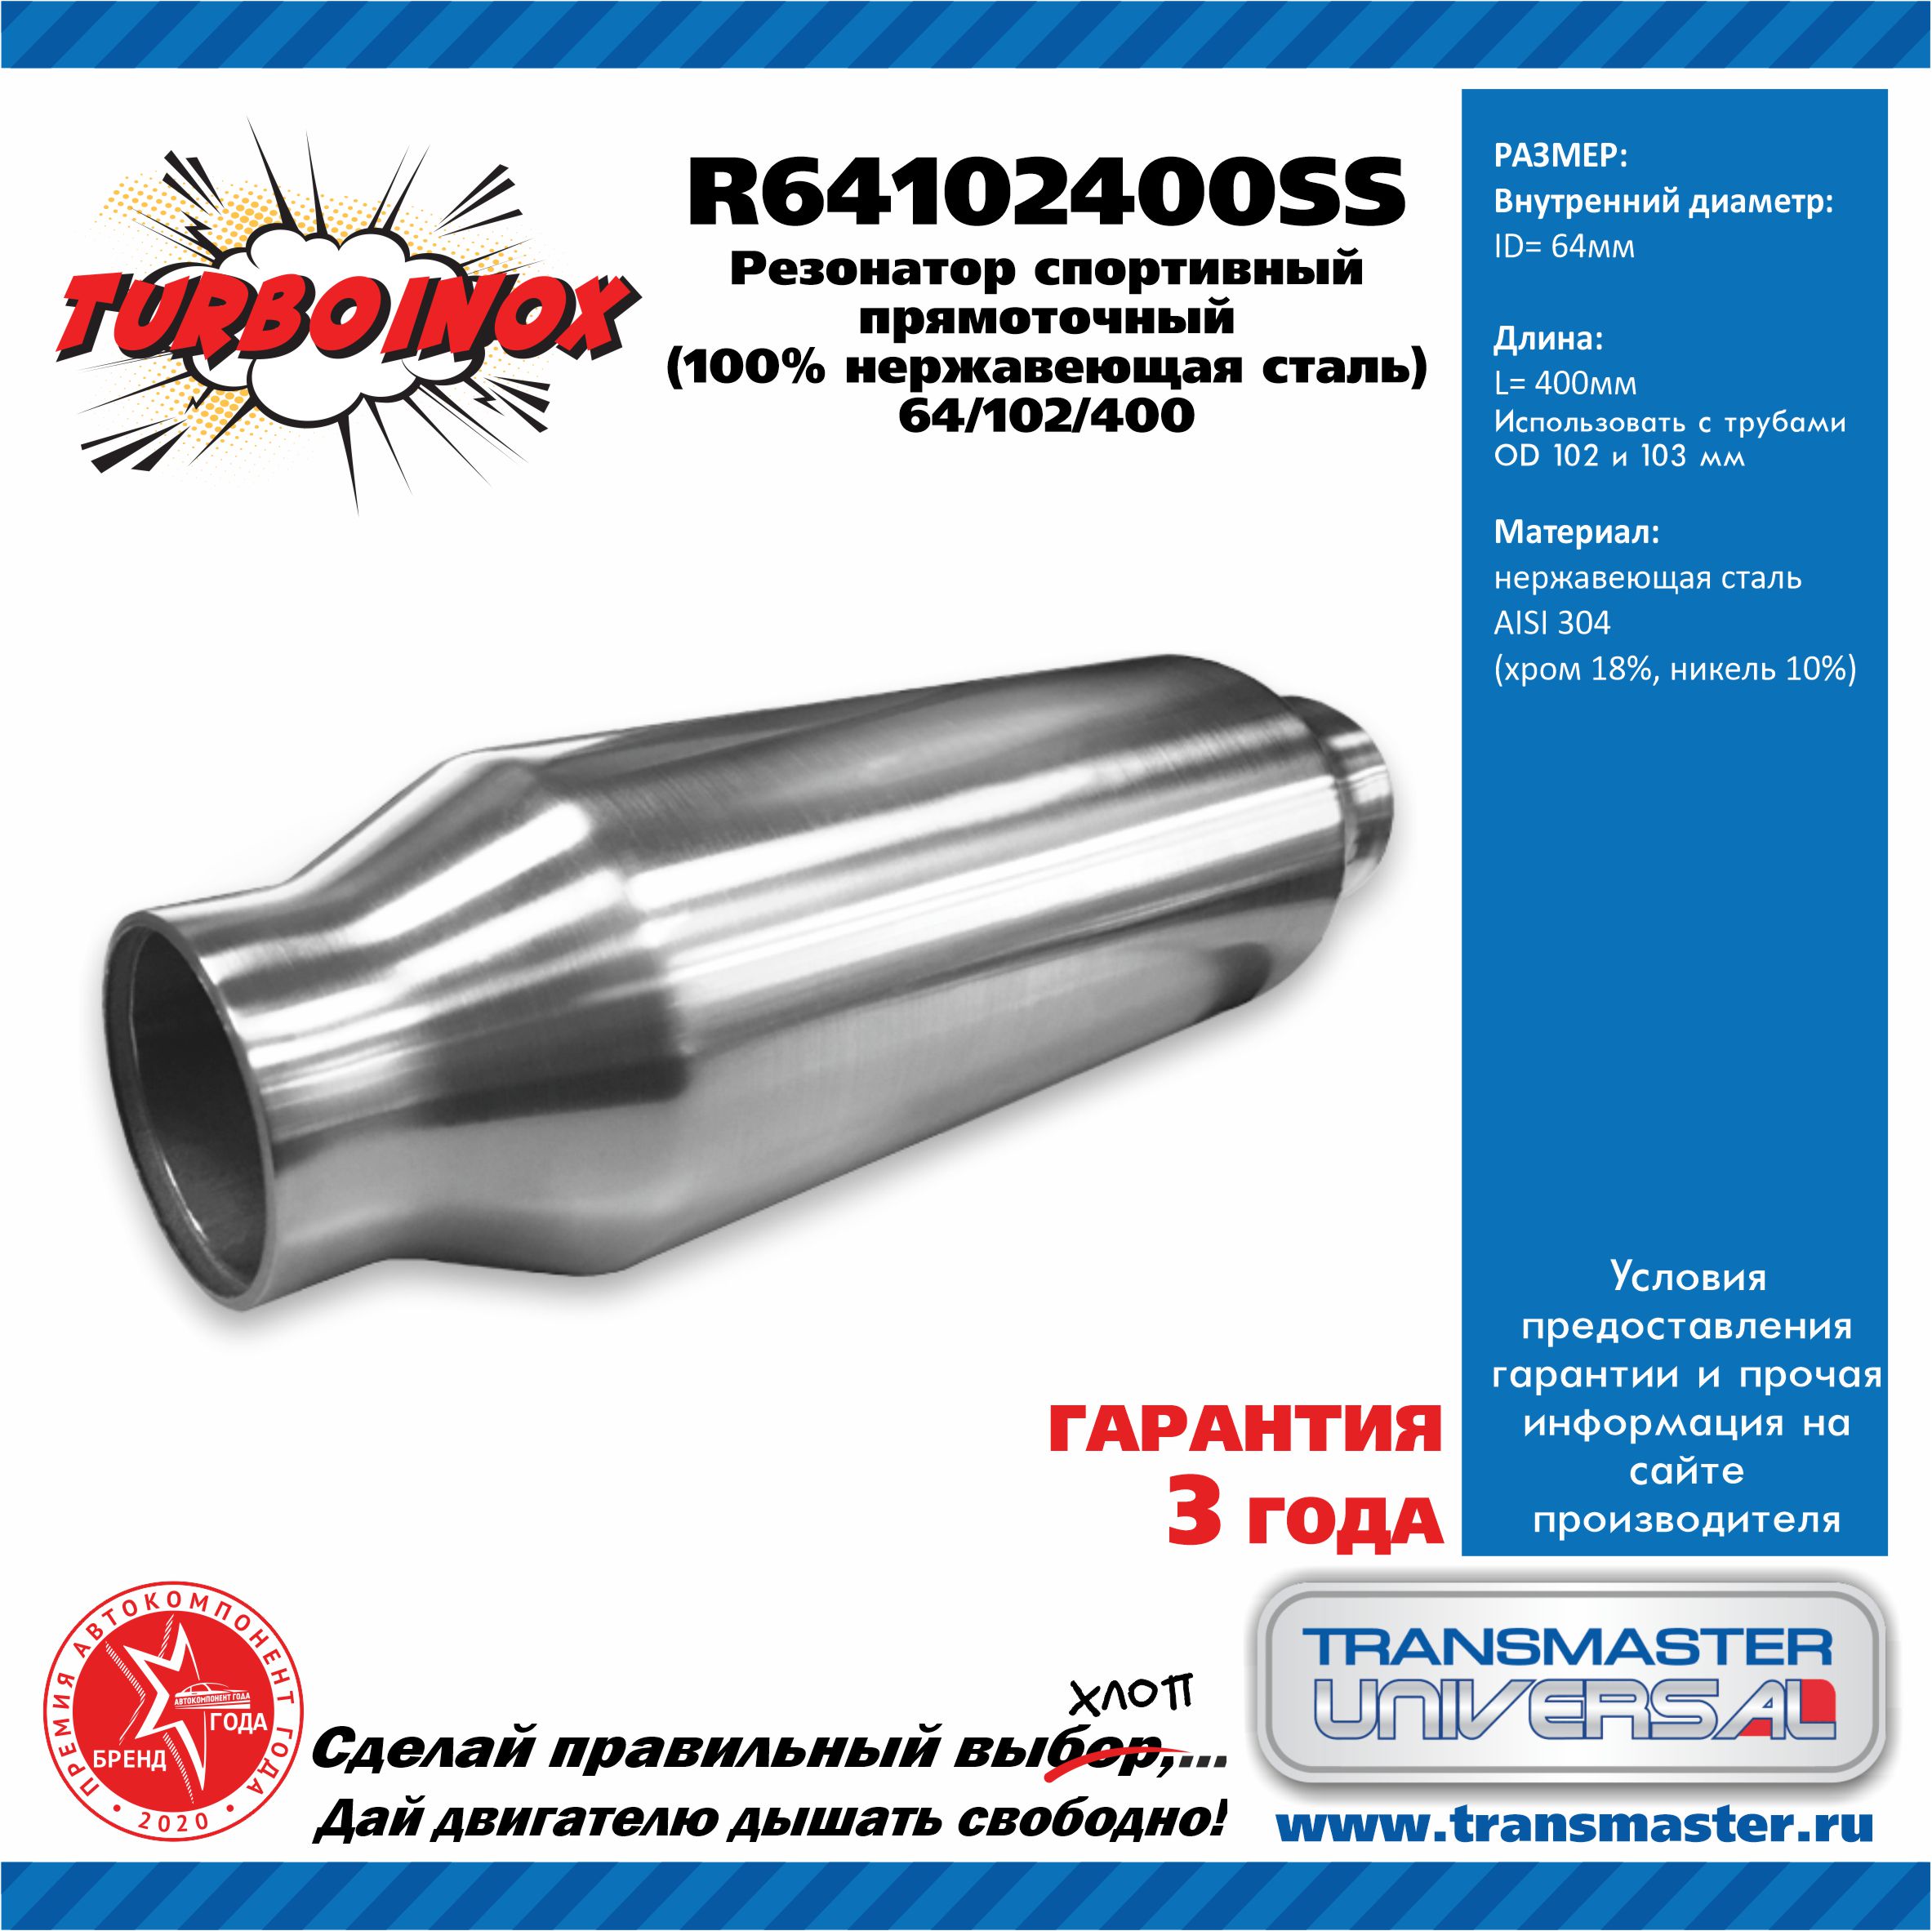 Резонатор спортивный прямоточный серия turboinox (100% нержавеющая сталь) - TRANSMASTER UNIVERSAL R64102400SS